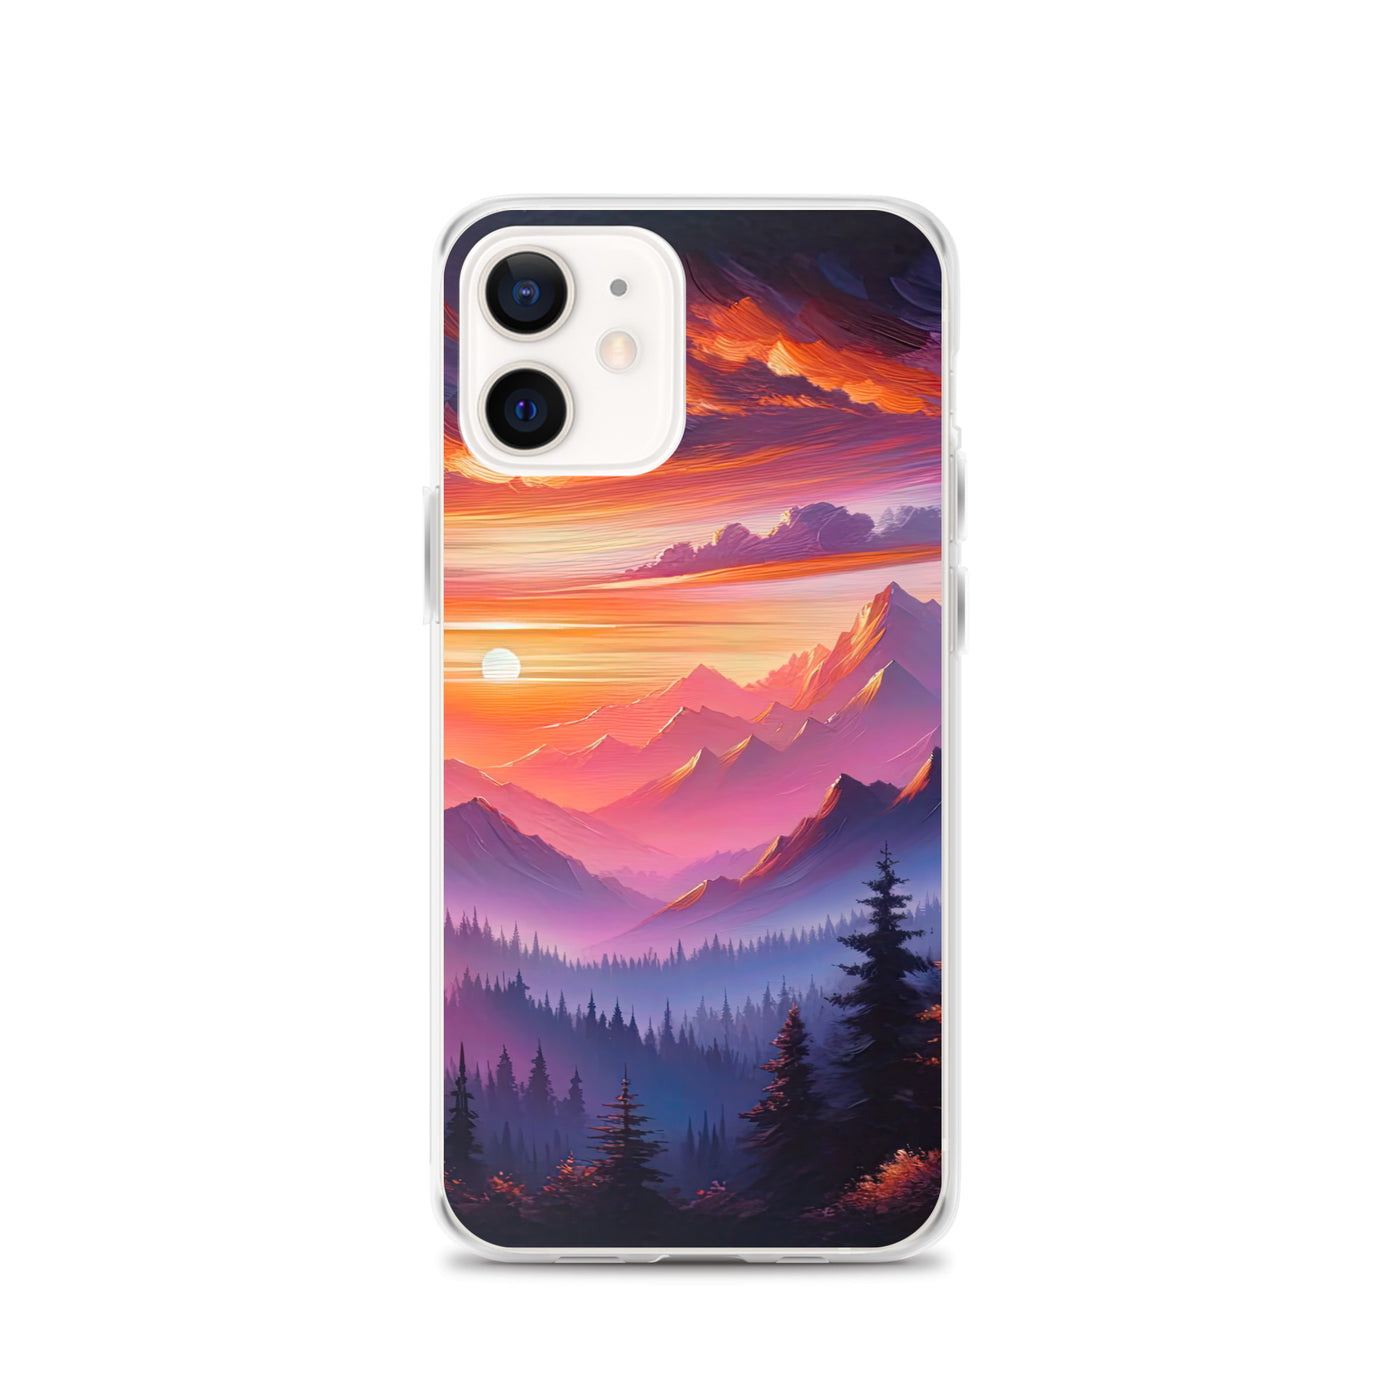 Ölgemälde der Alpenlandschaft im ätherischen Sonnenuntergang, himmlische Farbtöne - iPhone Schutzhülle (durchsichtig) berge xxx yyy zzz iPhone 12